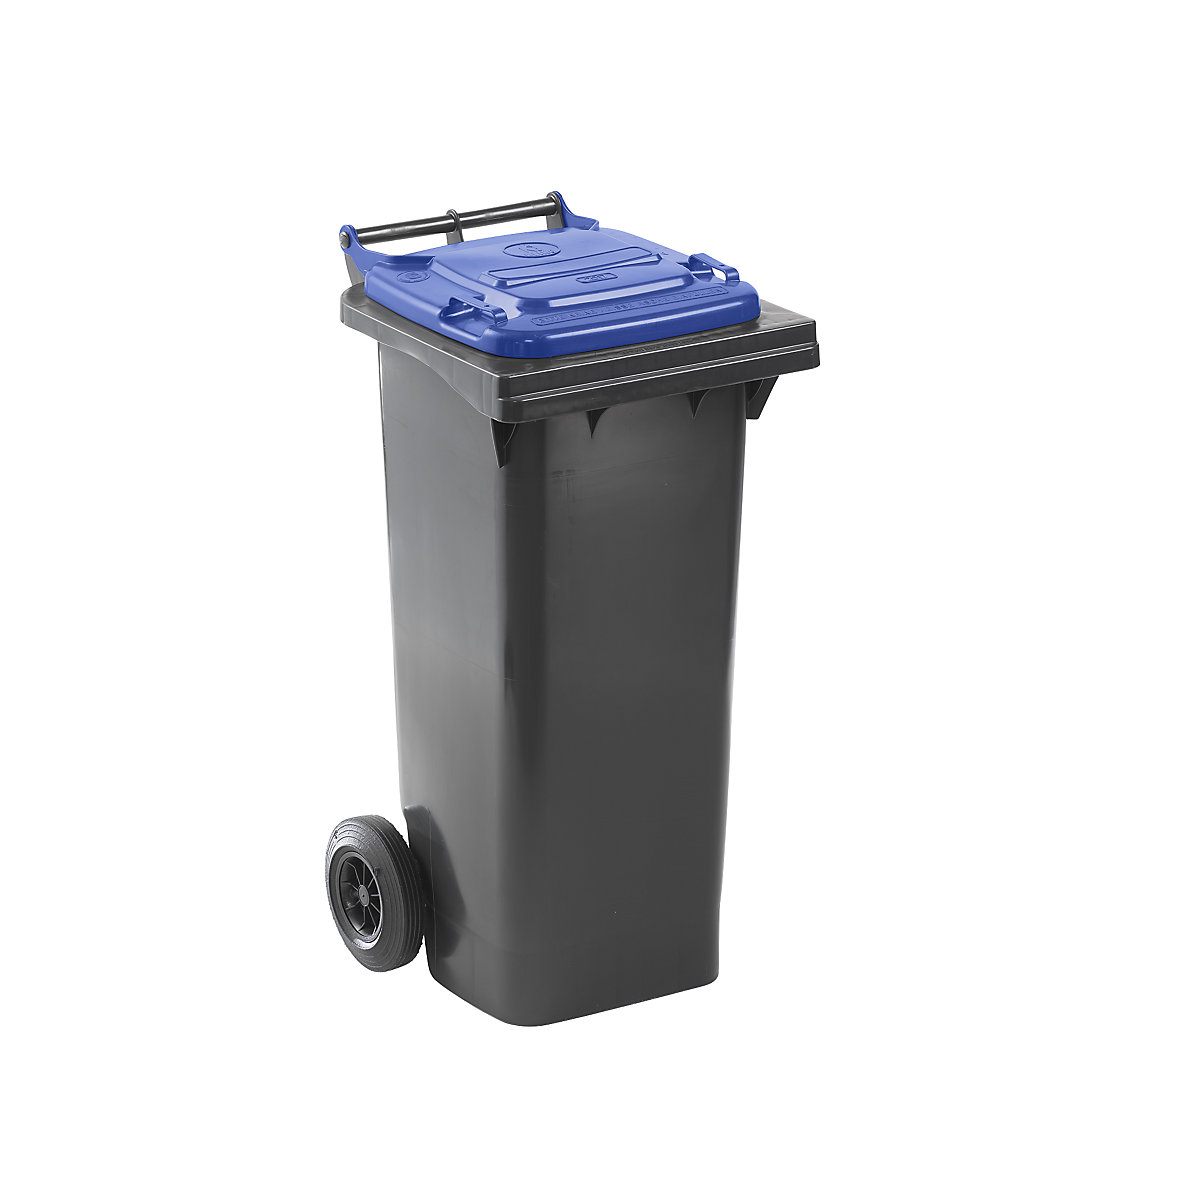 Mülltonne nach DIN EN 840, Volumen 80 l, BxHxT 448 x 975 x 530 mm, anthrazit, Deckel blau-6